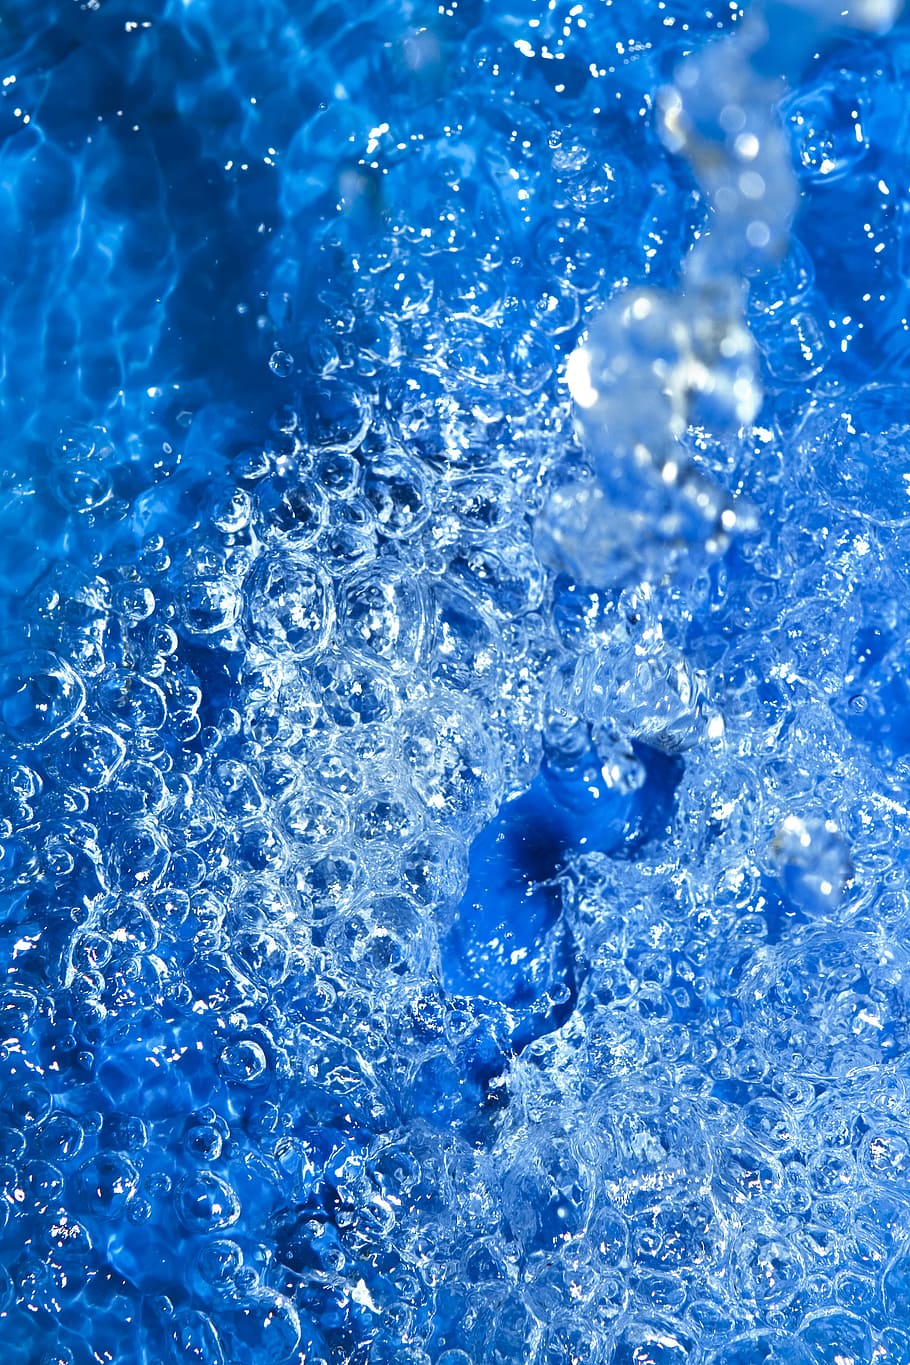 background, bath, blue, bubble, clean, clear, close-up, closeup, cold, concept